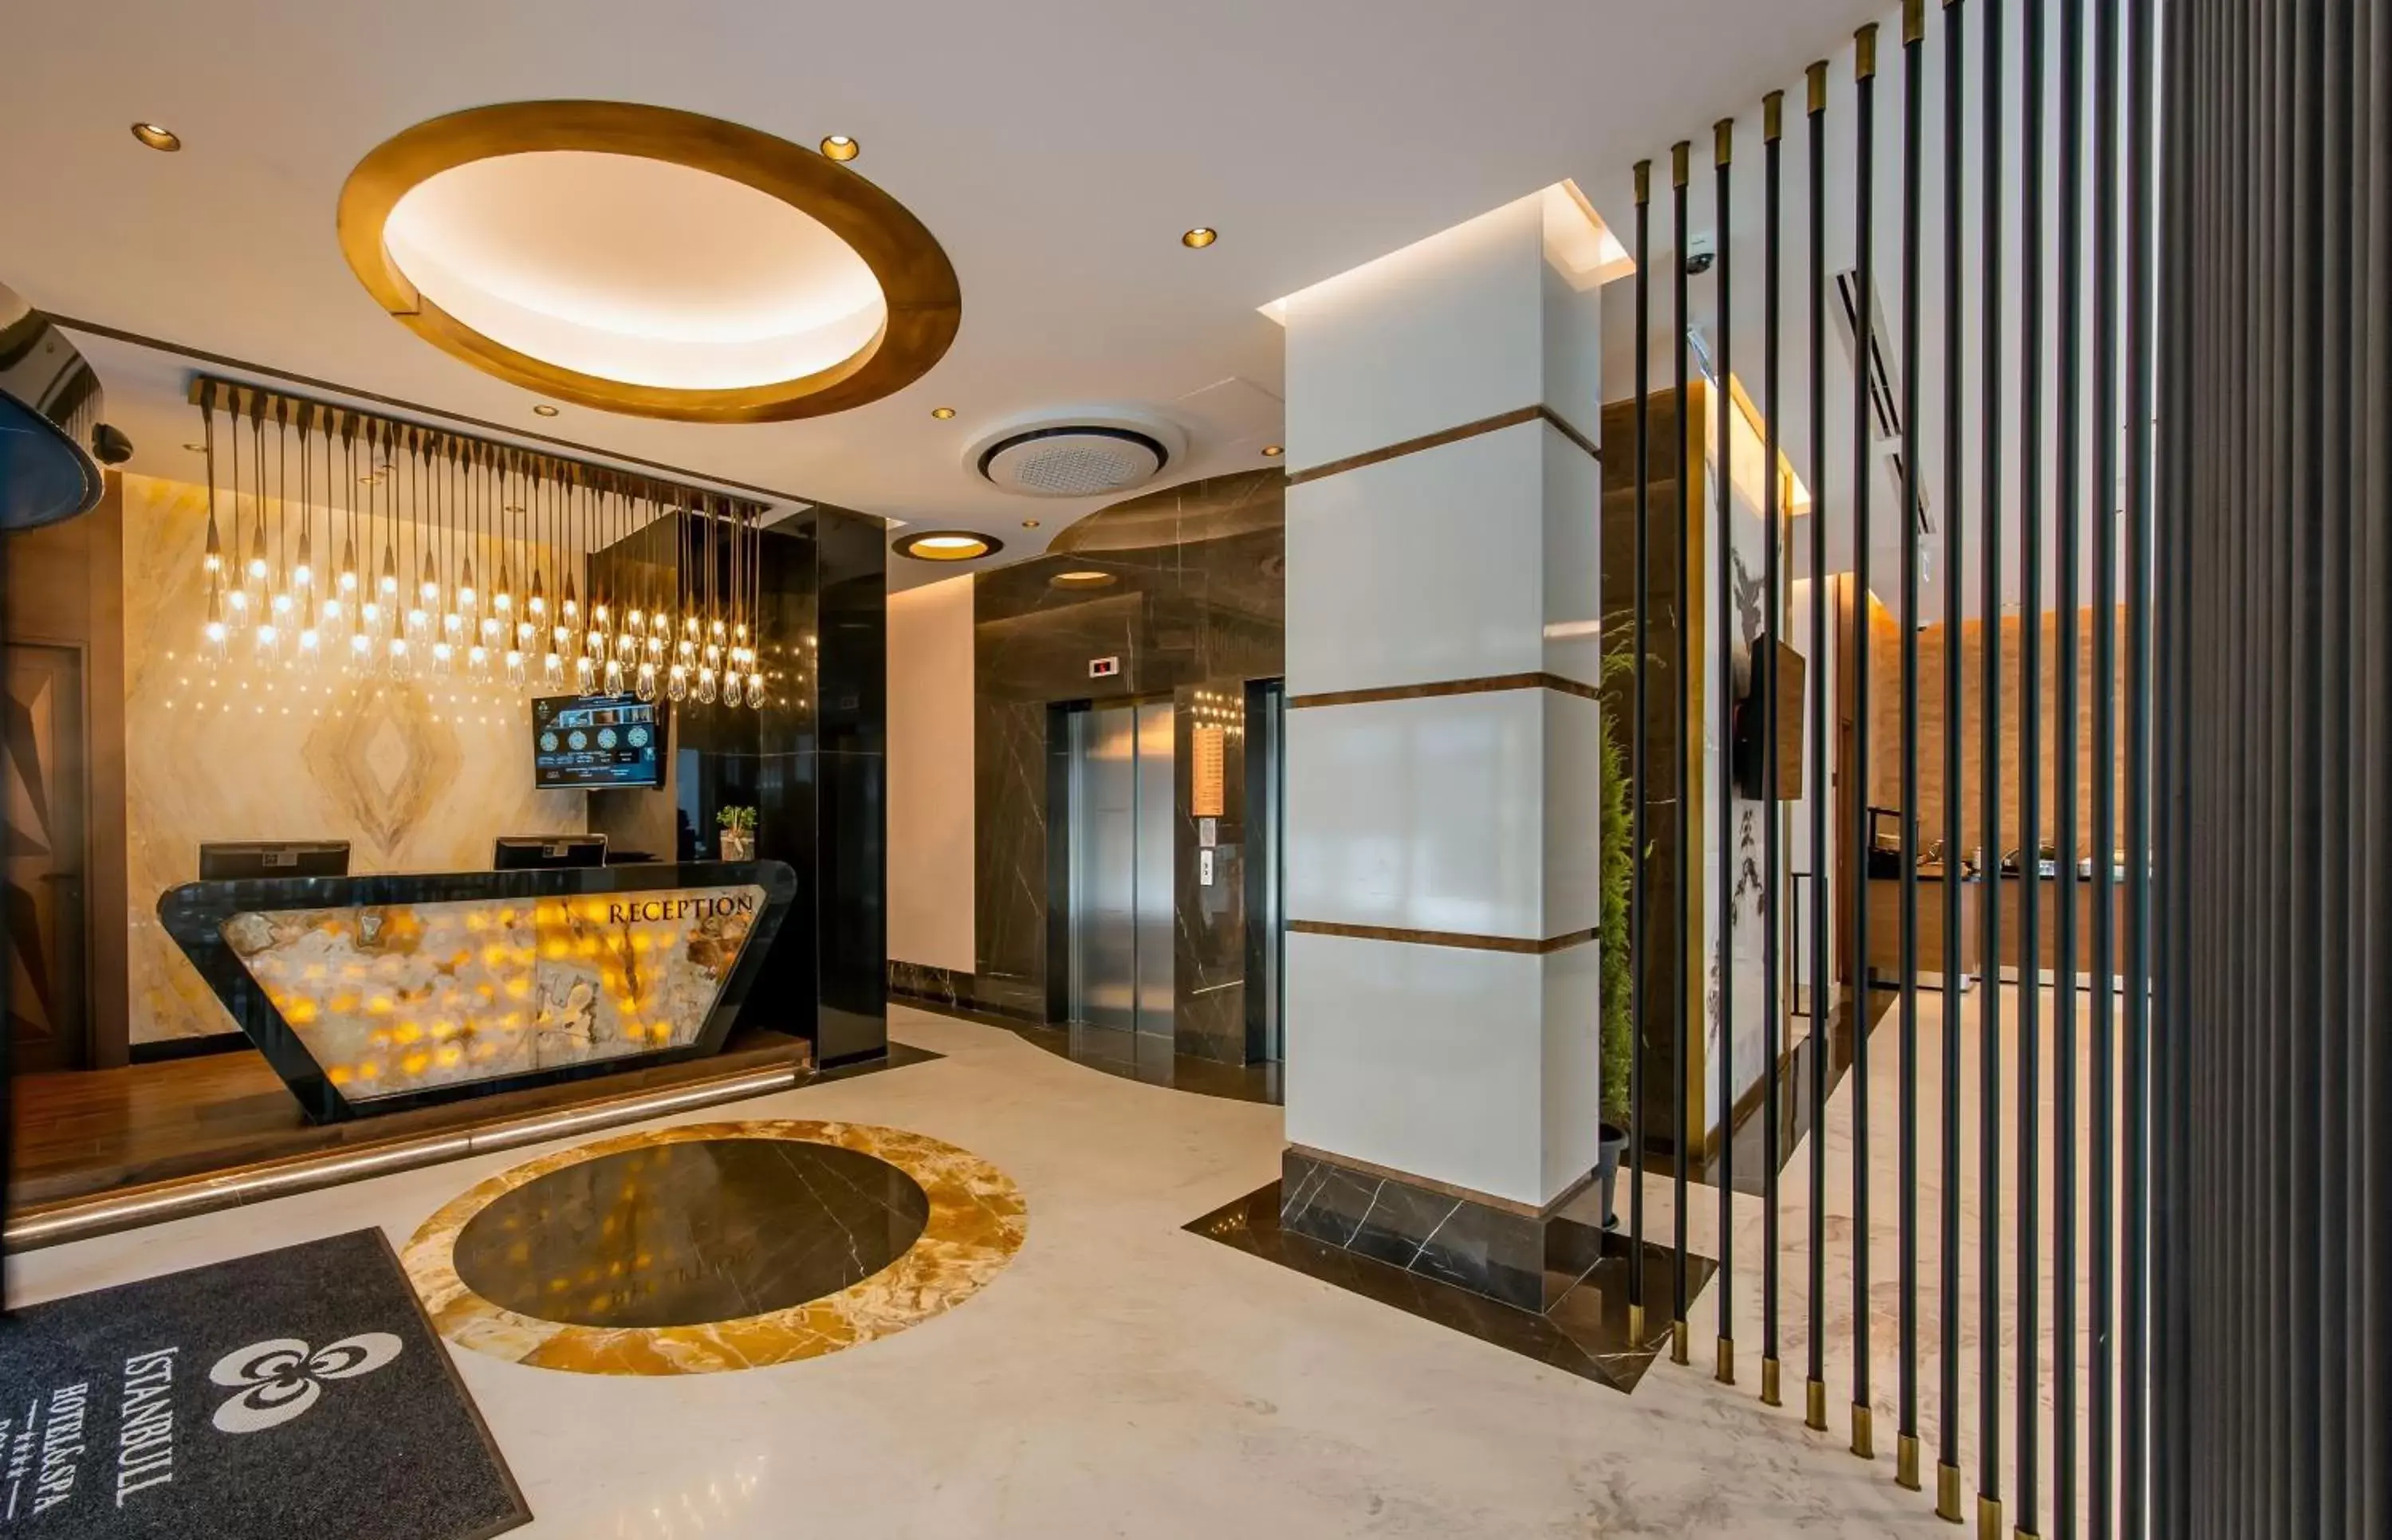 Lobby or reception, Lobby/Reception in Febor İstanbul Bomonti Hotel & Spa